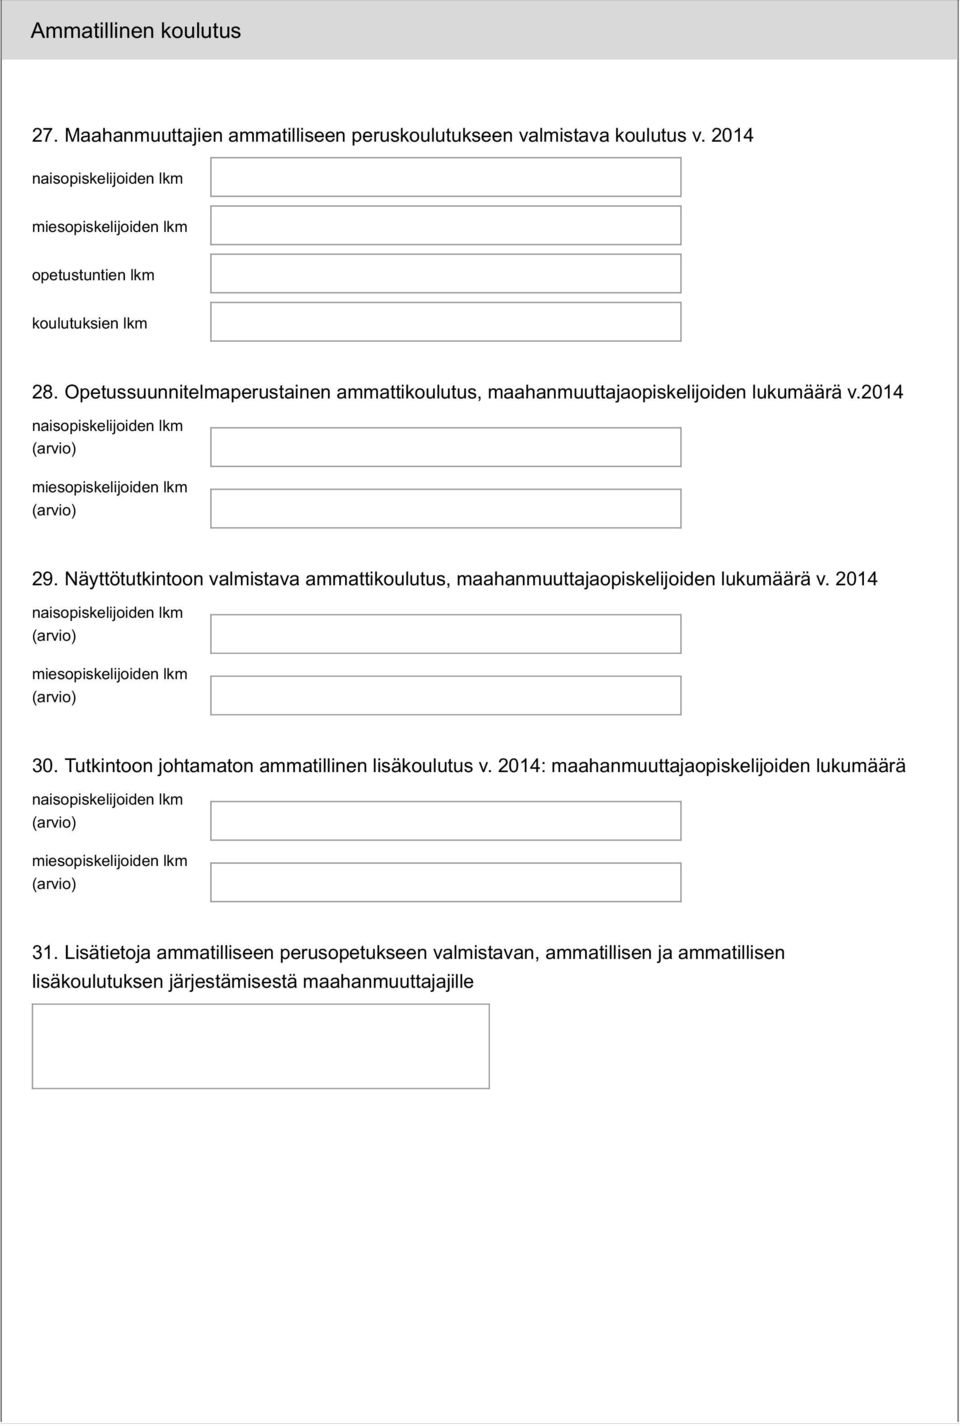 Näyttötutkintoon valmistava ammattikoulutus, maahanmuuttajaopiskelijoiden lukumäärä v. 2014 30.